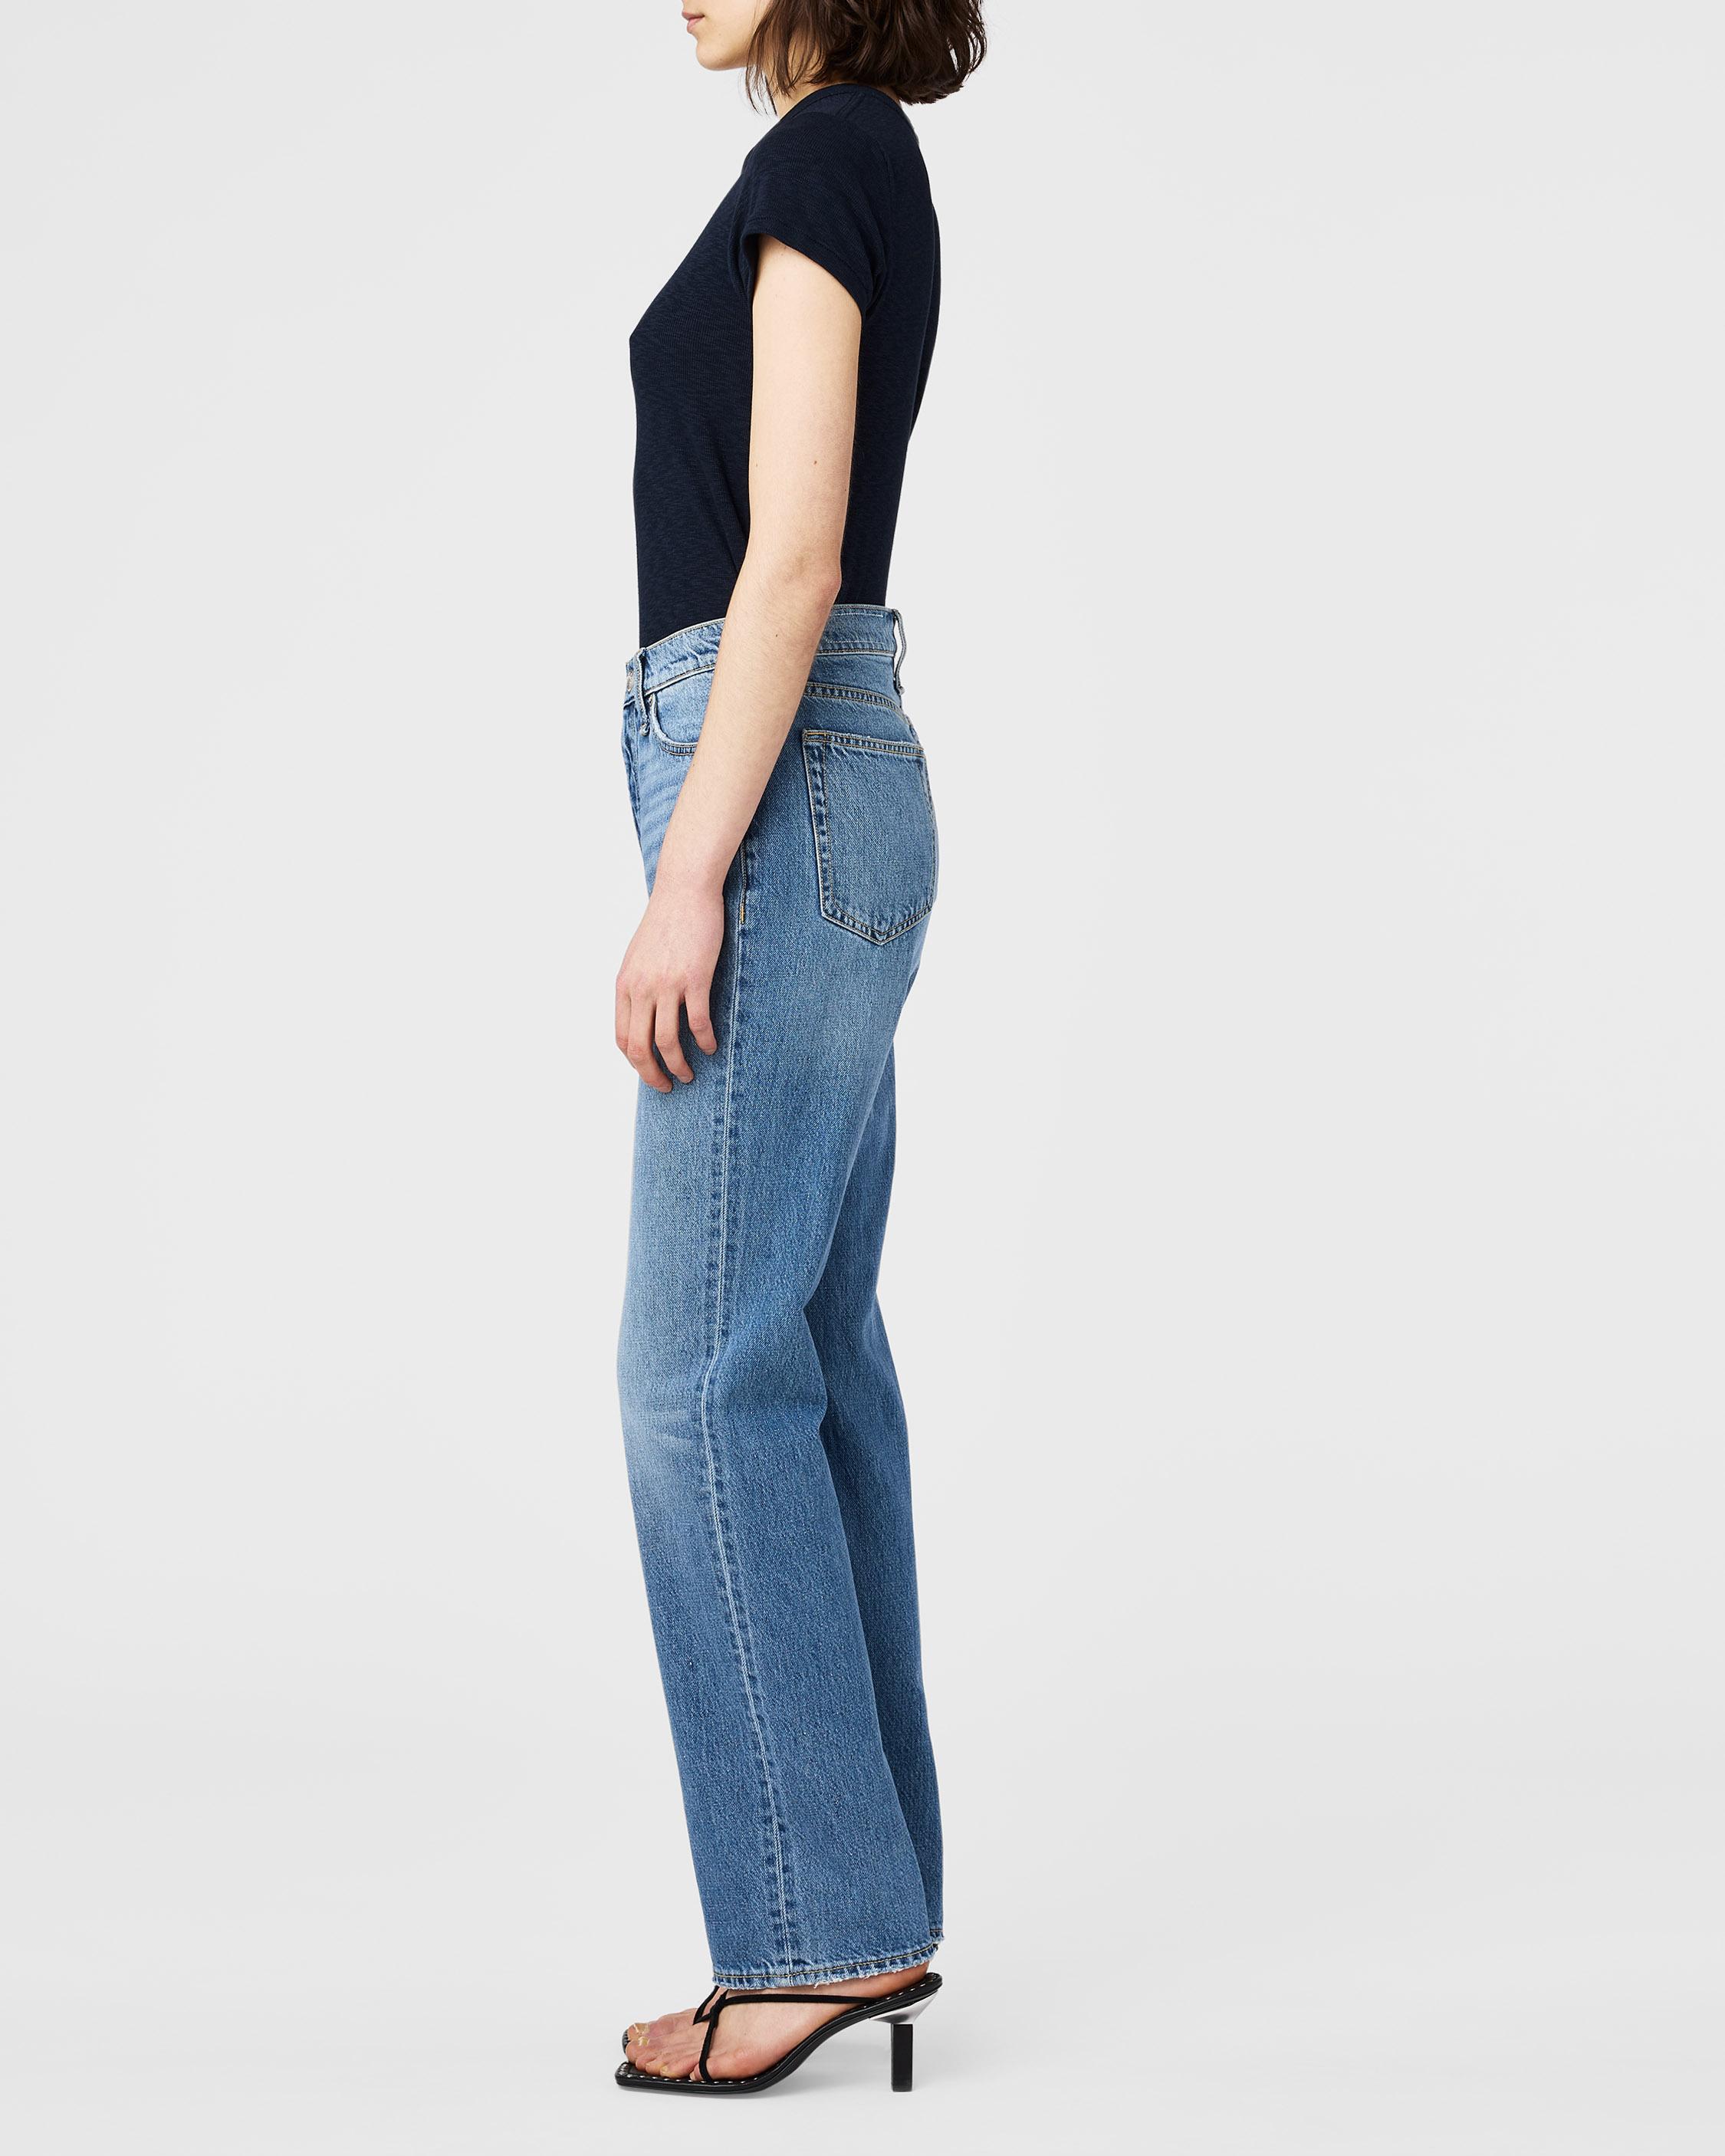 Shop Sale Jeans for Women | rag & bone